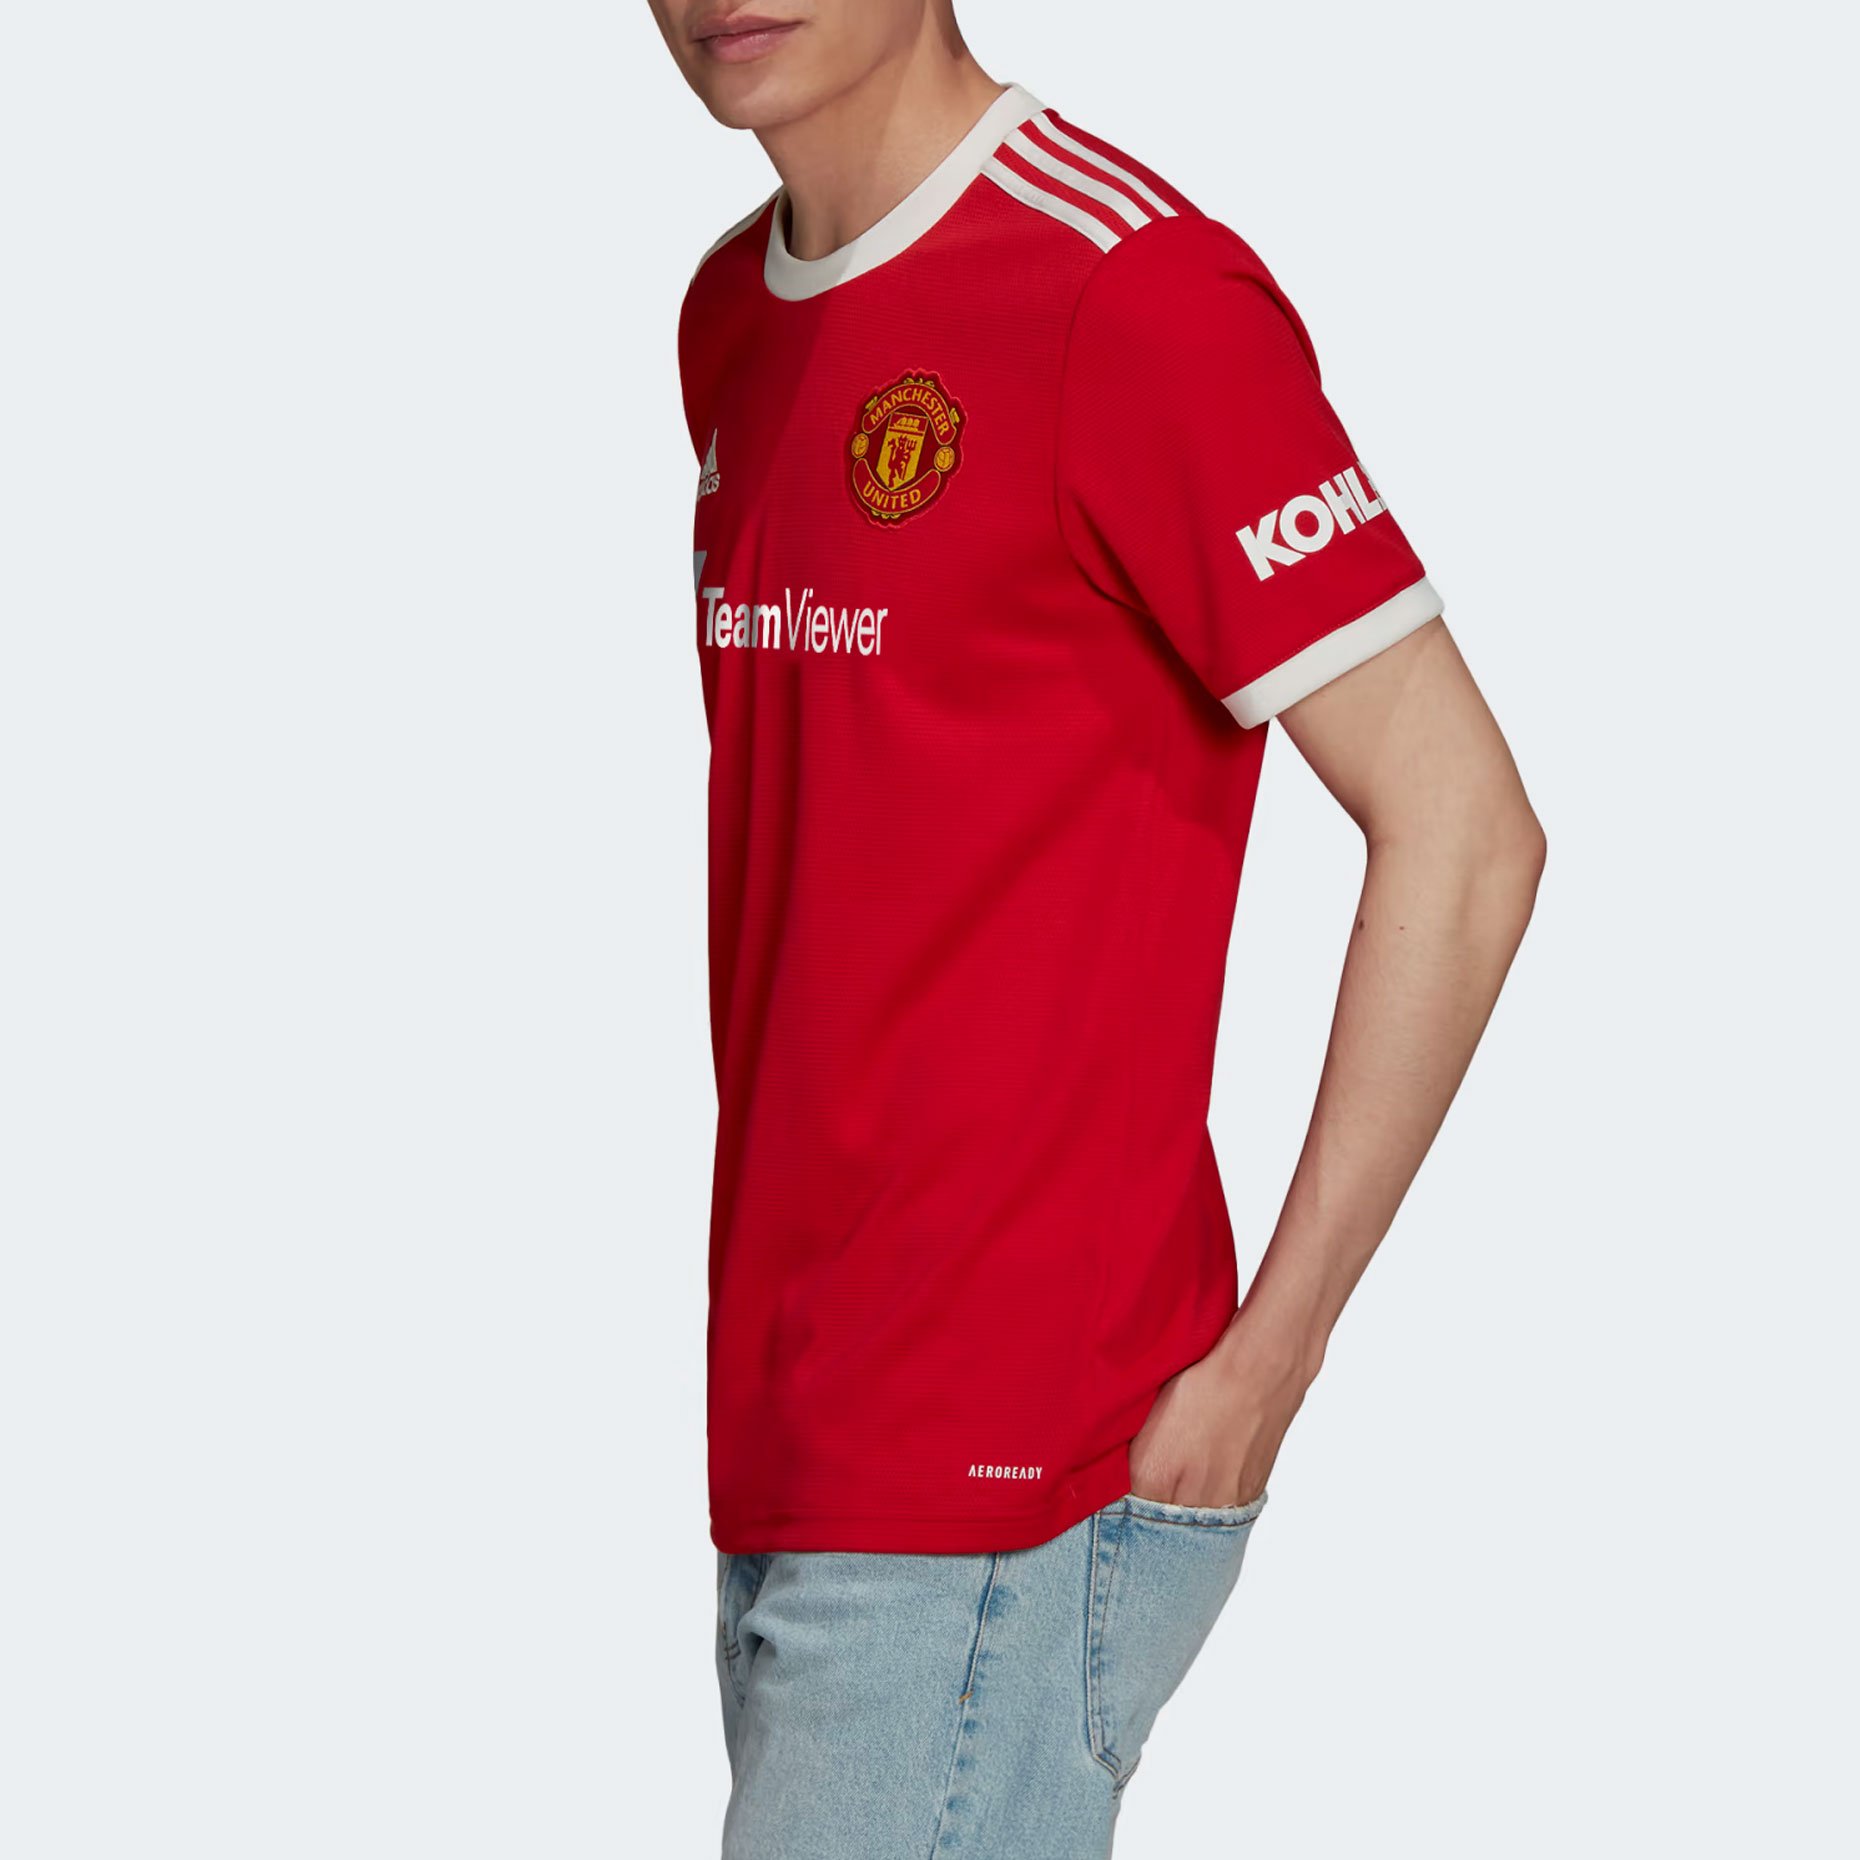 Домашняя игровая футболка adidas ФК "Манчестер Юнайтед" 2021/22